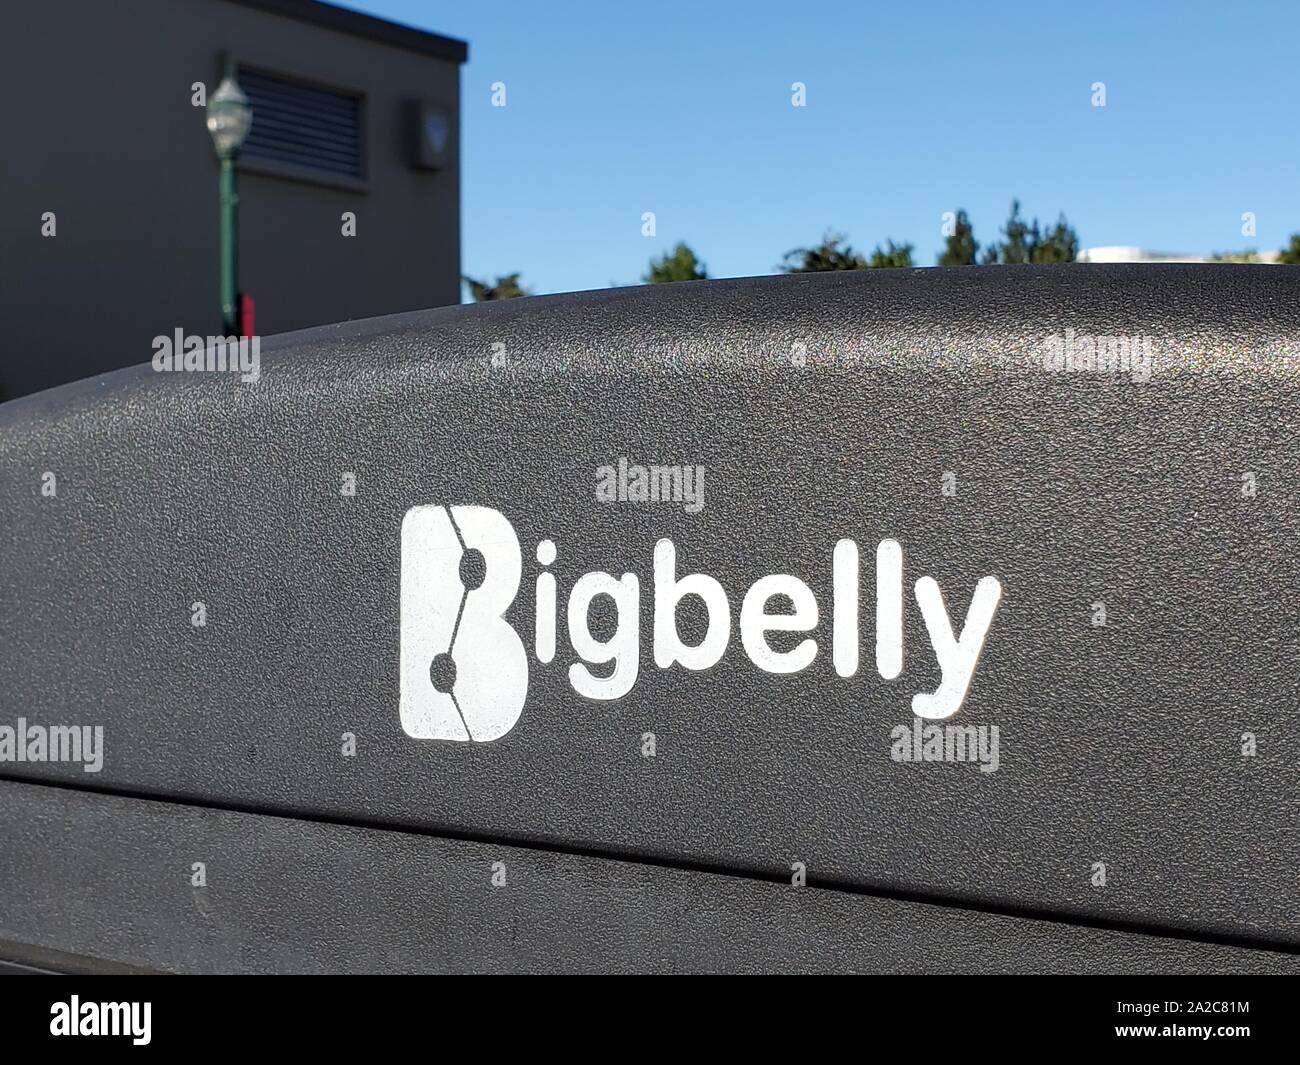 Primo piano del logo per il compattatore per rifiuti per esterni a energia solare Bigbelly, utilizzato per compattare rifiuti e riciclabili in lattine di rifiuti urbani che utilizzano energia solare, Walnut Creek, California, 2 agosto 2019. () Foto Stock